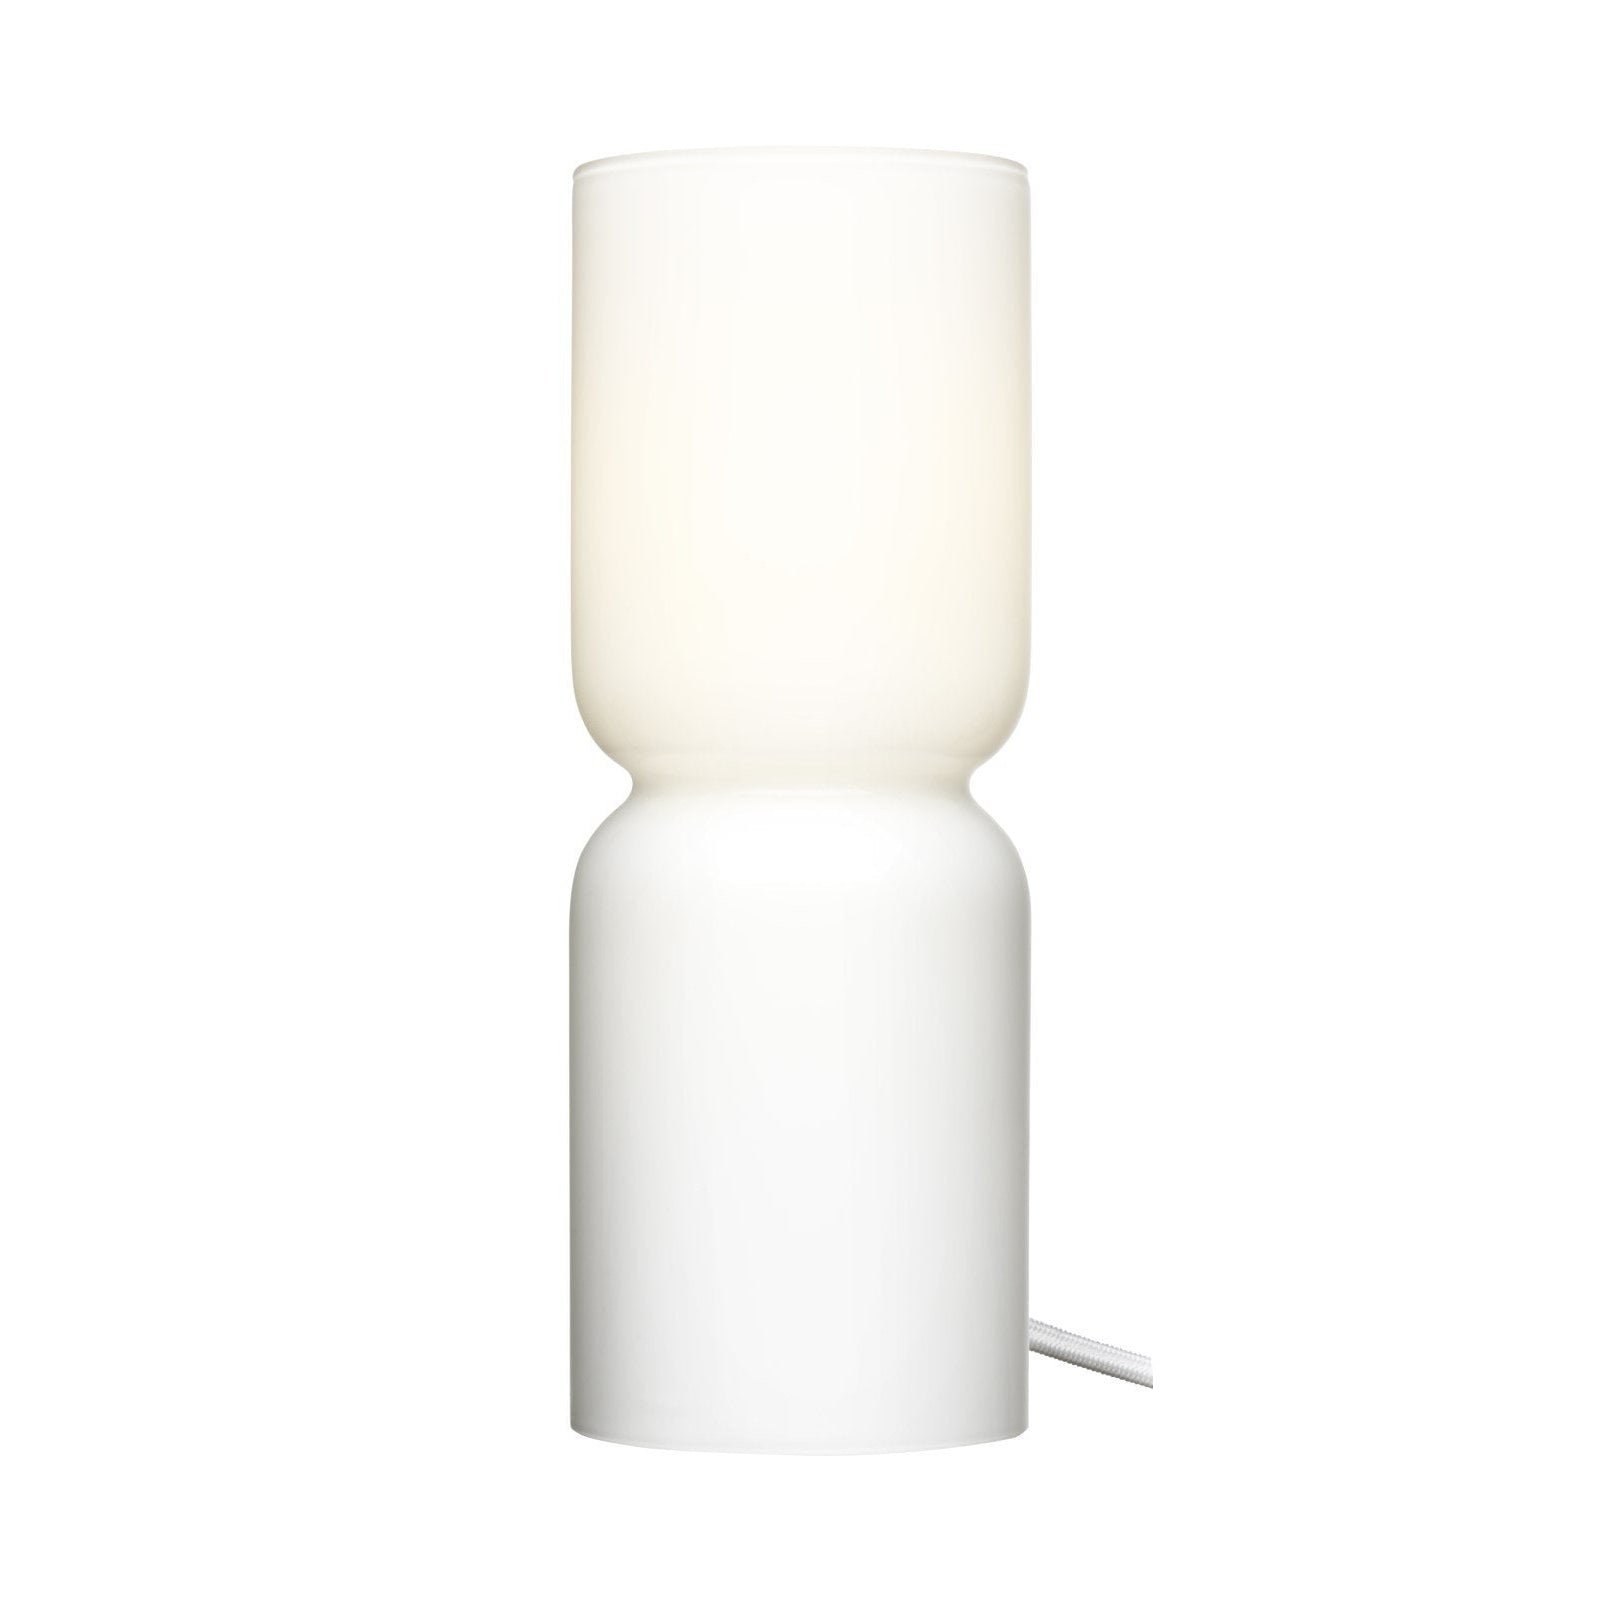 Iittala Lantern Lampe Opal, 25cm-Tischlampe-Iittala-6428501303125-1009434-IIT-inwohn